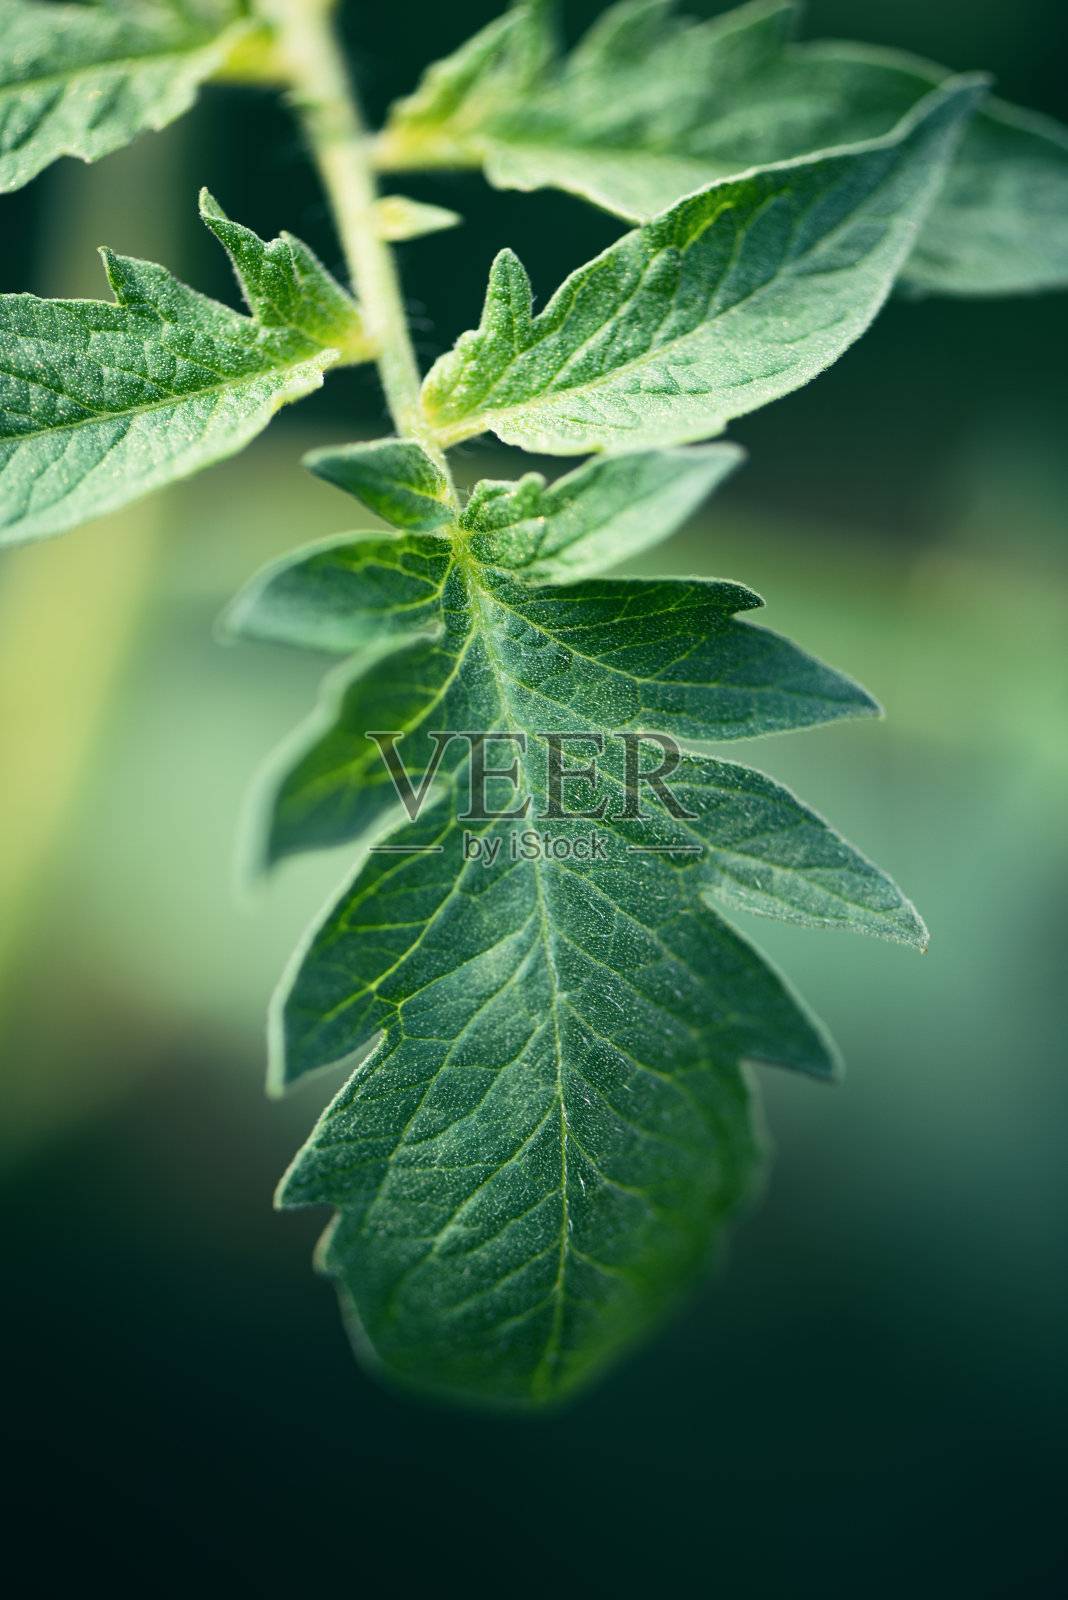 植物与花:一株番茄植物叶子的微距摄影照片摄影图片